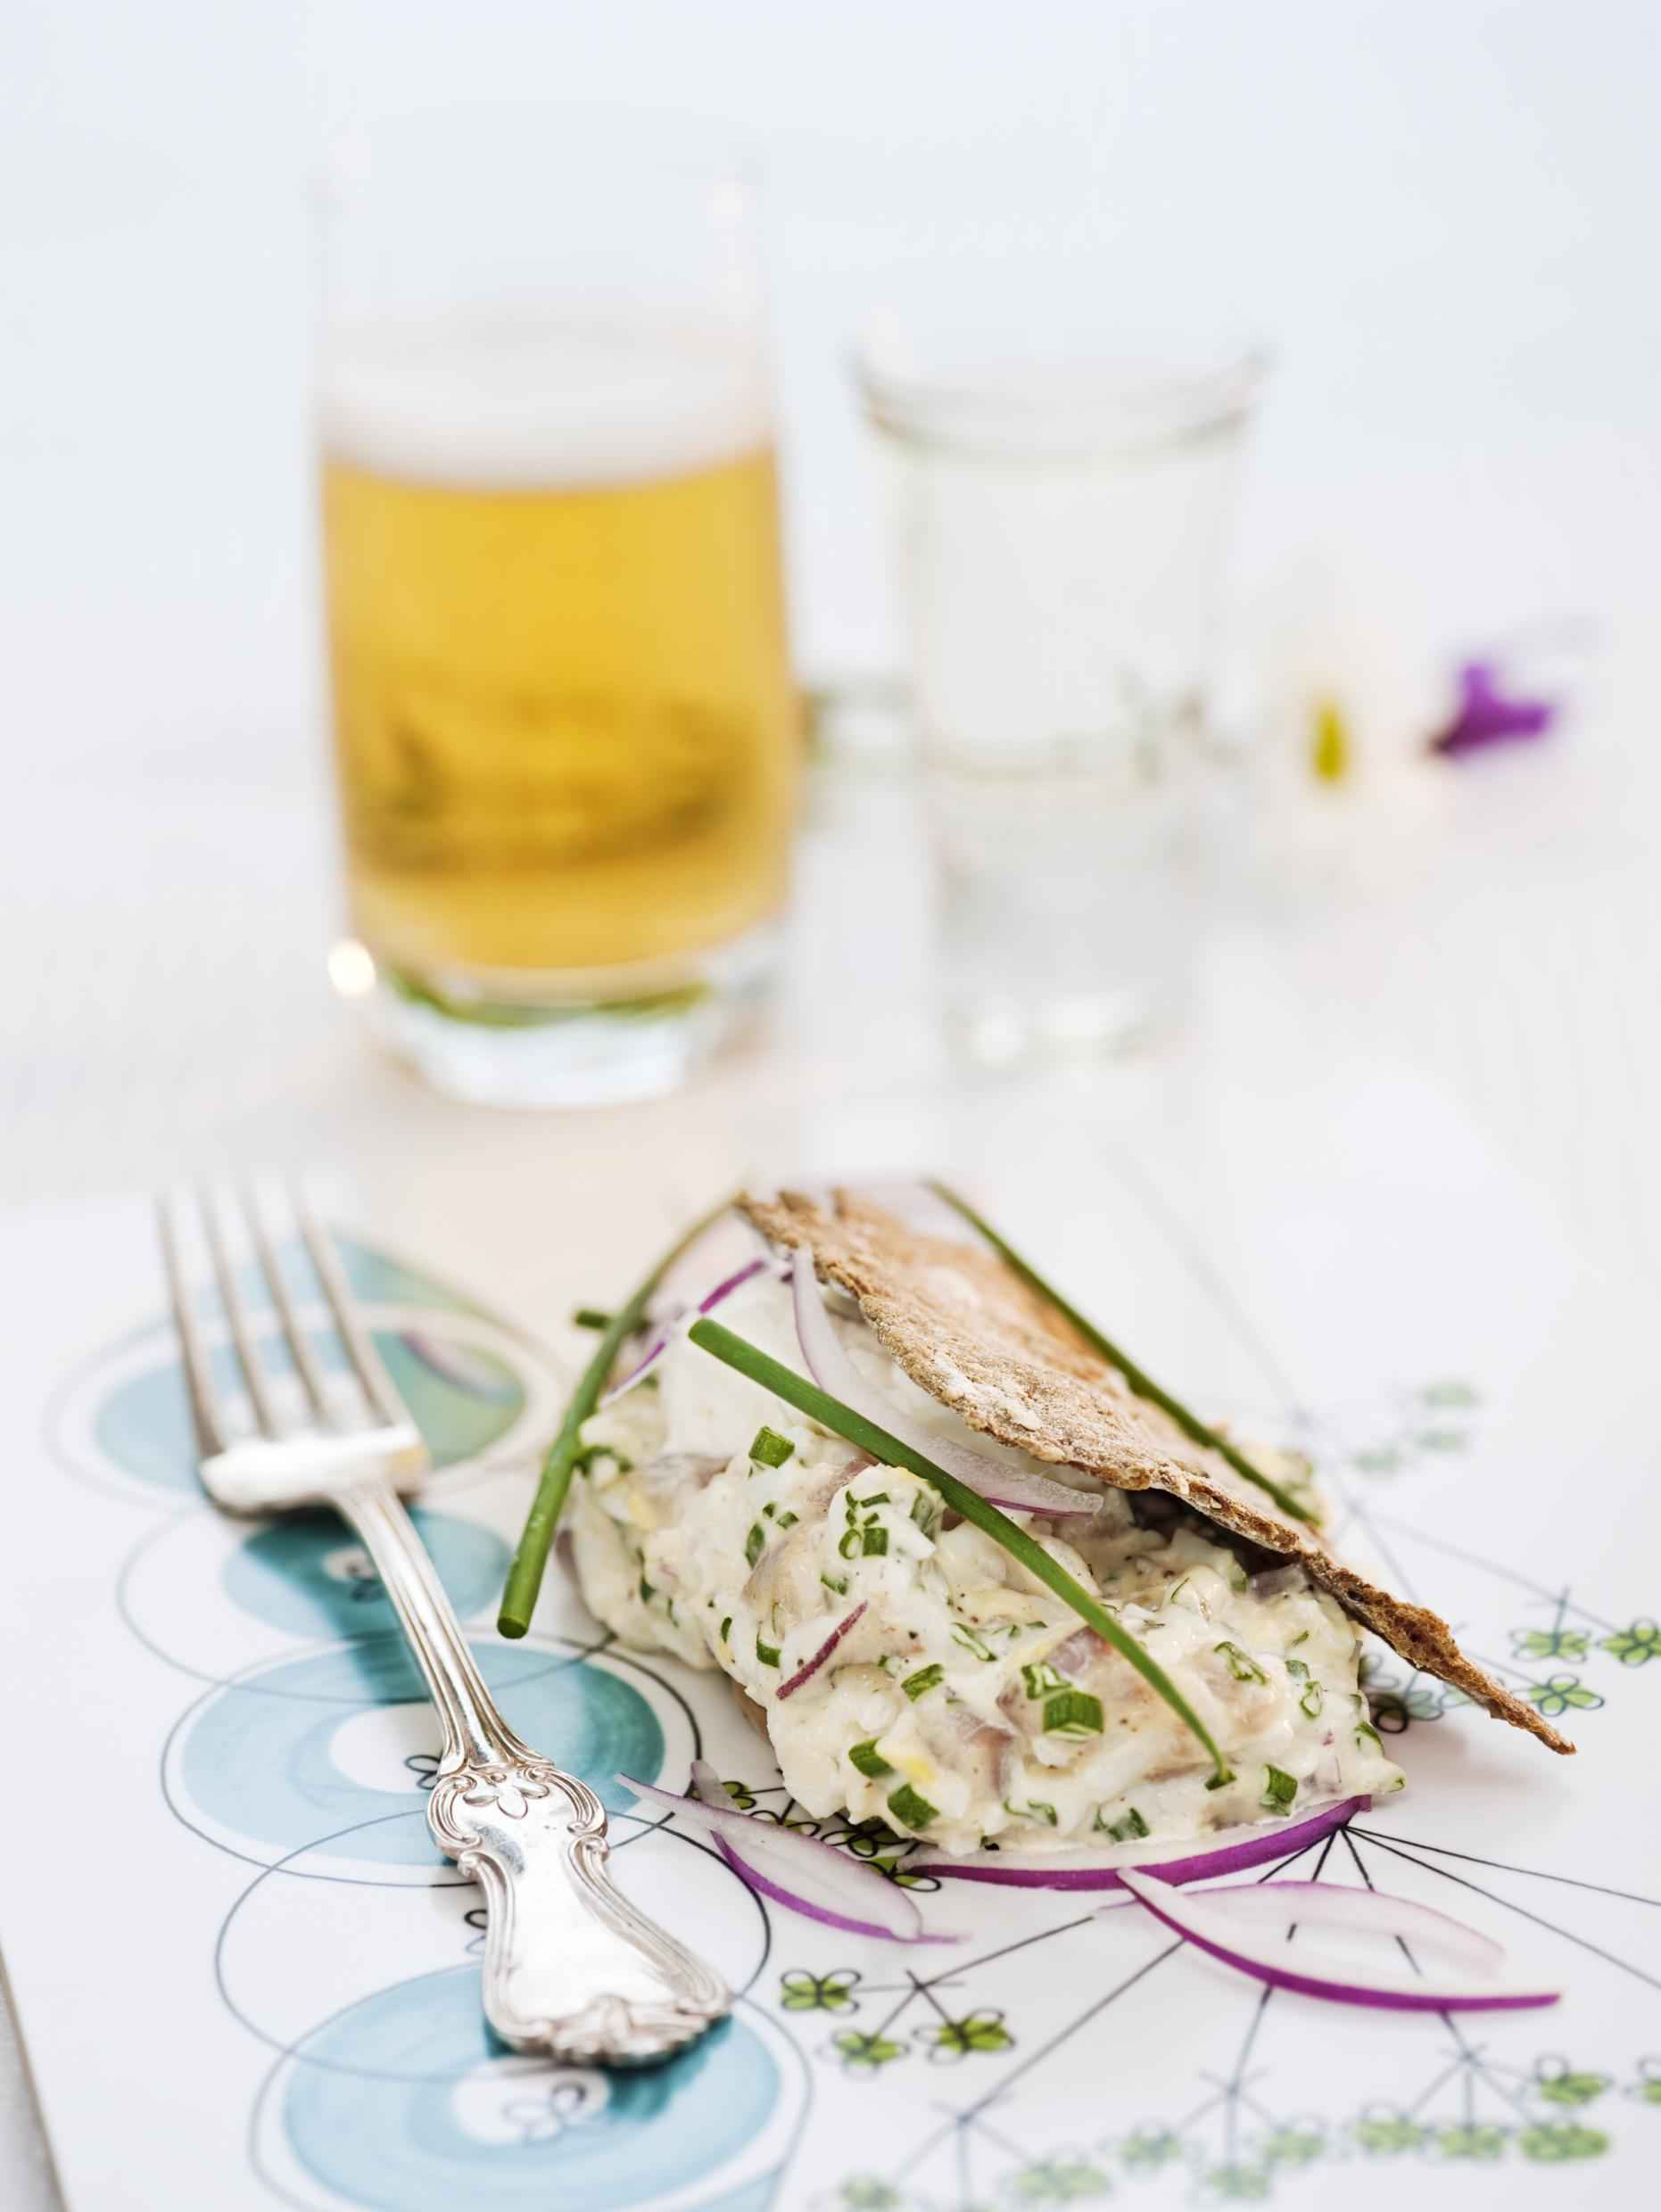 Gubbröra on dill-pickled herring from Klädesholmen